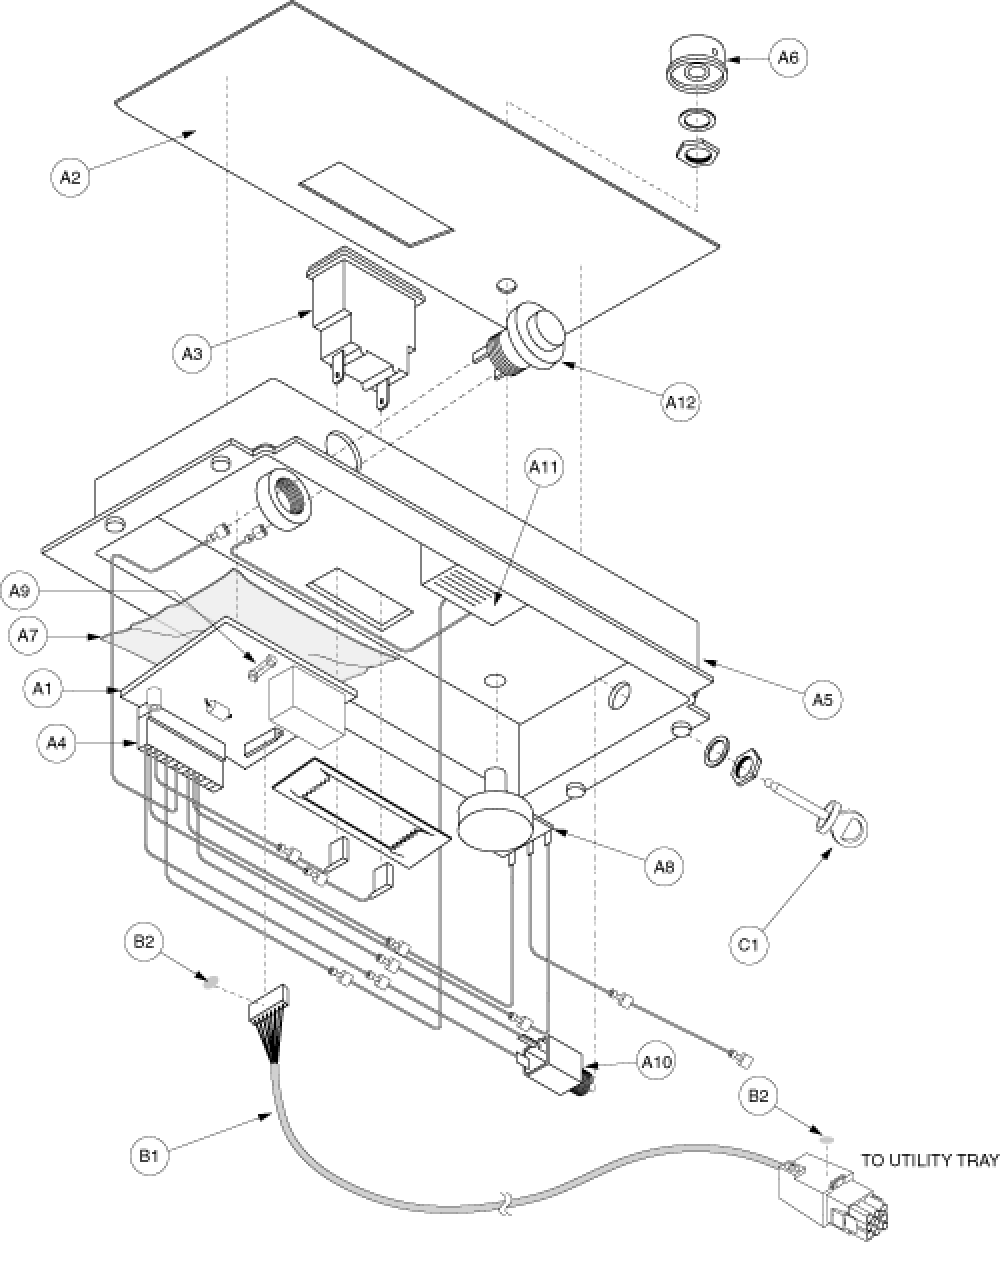 Electronics Assembly - Console Gen. 2 parts diagram